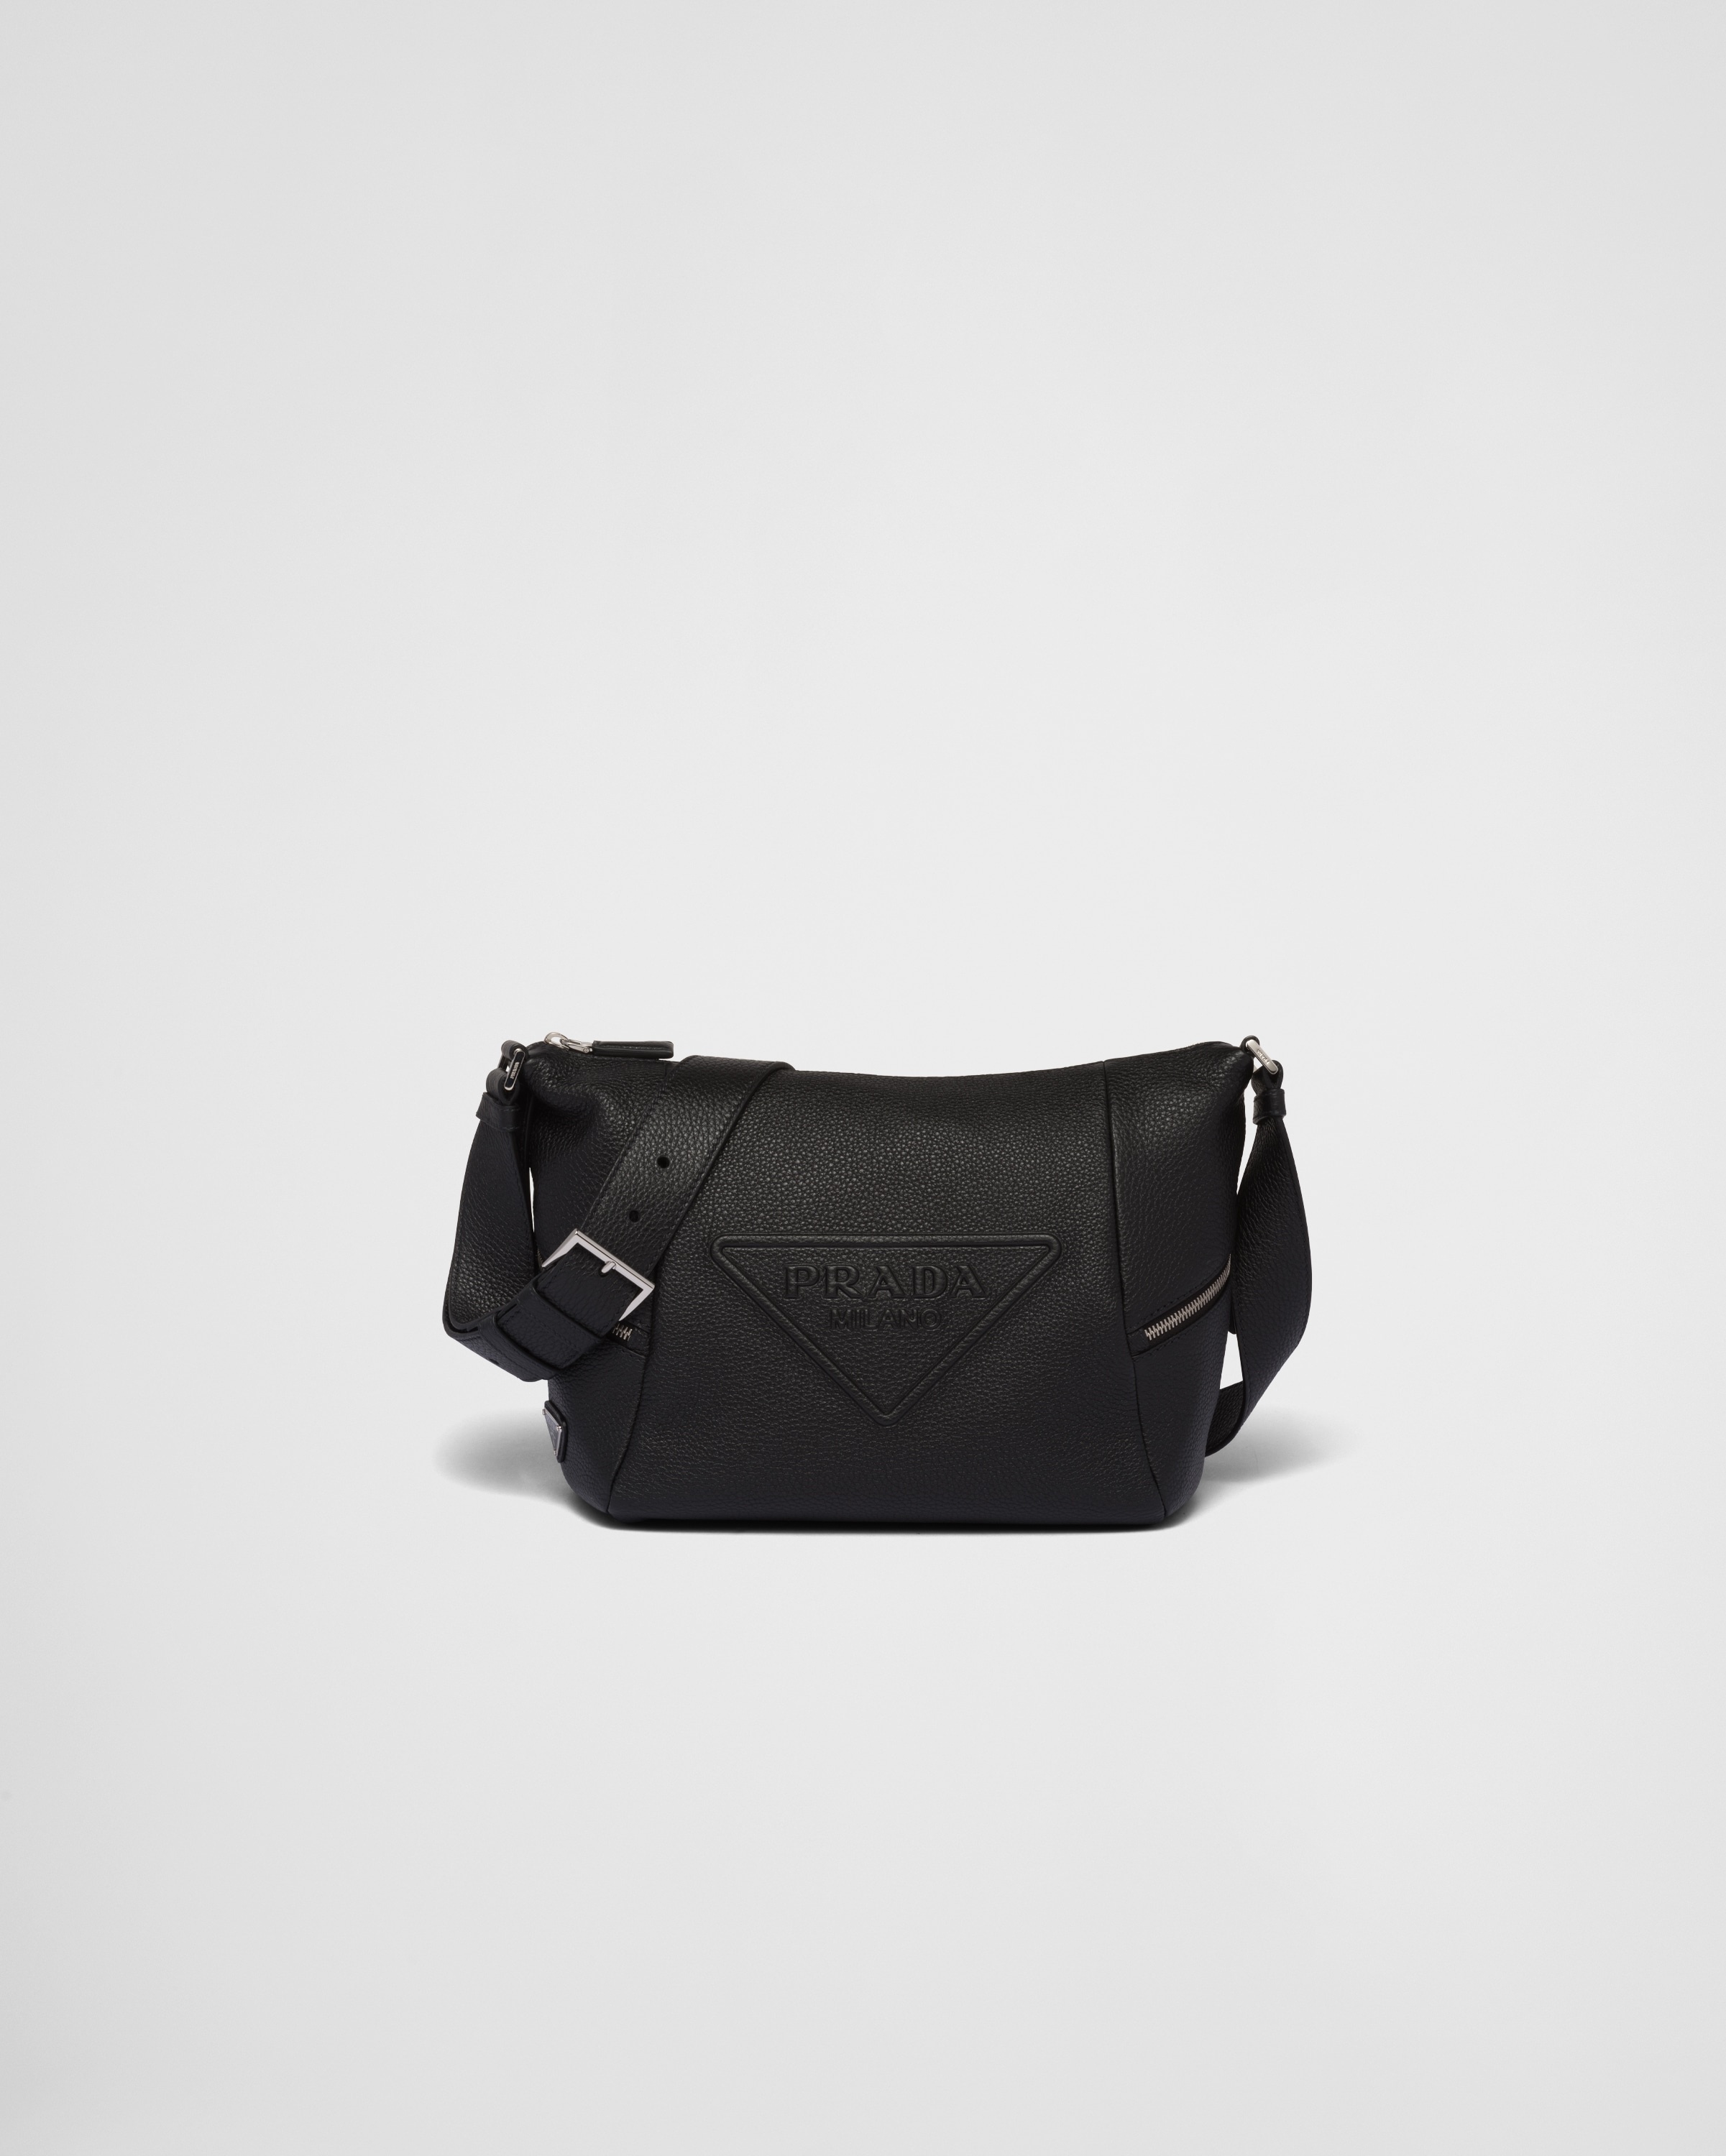 Leather bag with shoulder strap - 1